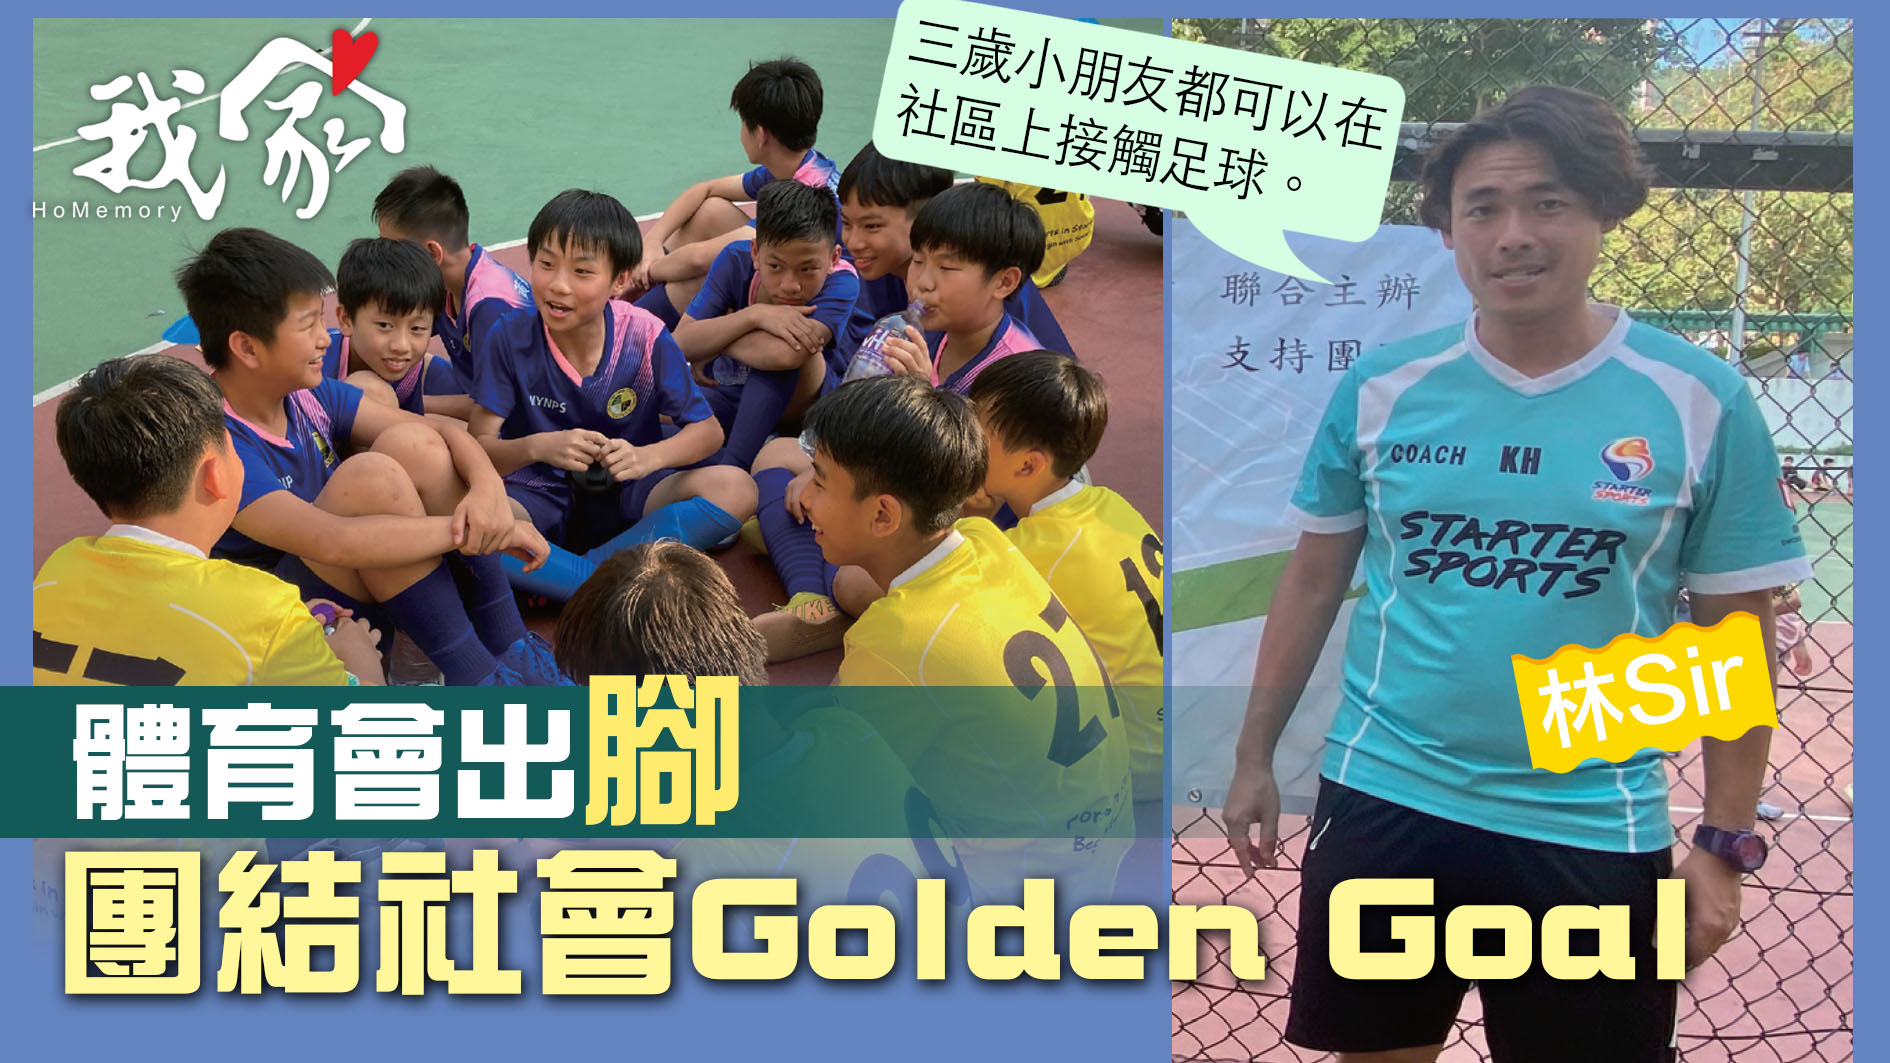 (沙田)體育會出腳 團結社會Golden Goal